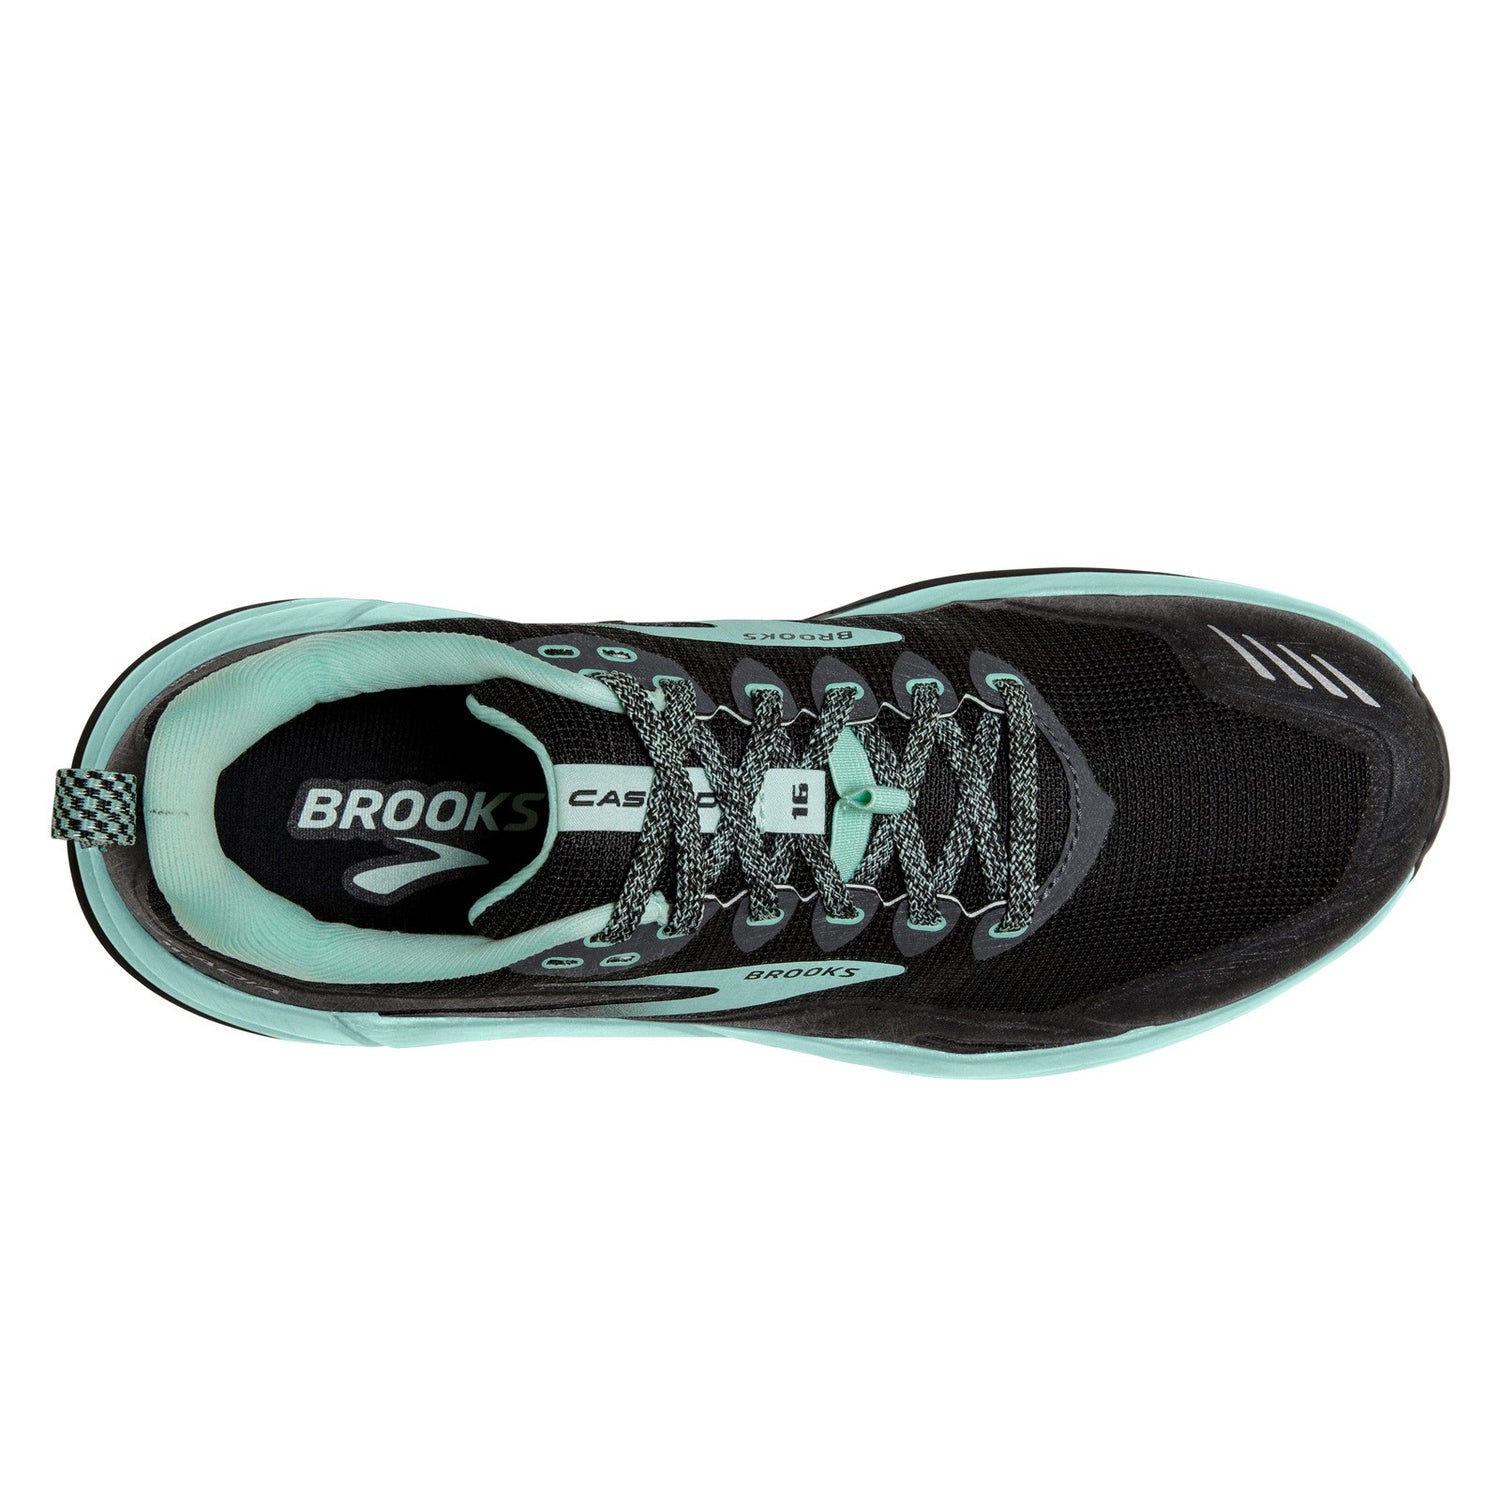 Peltz Shoes  Women's Brooks Cascadia 16 Trail Running Shoe - Wide Width Black/Ebony/Yucca 120363 1D 049